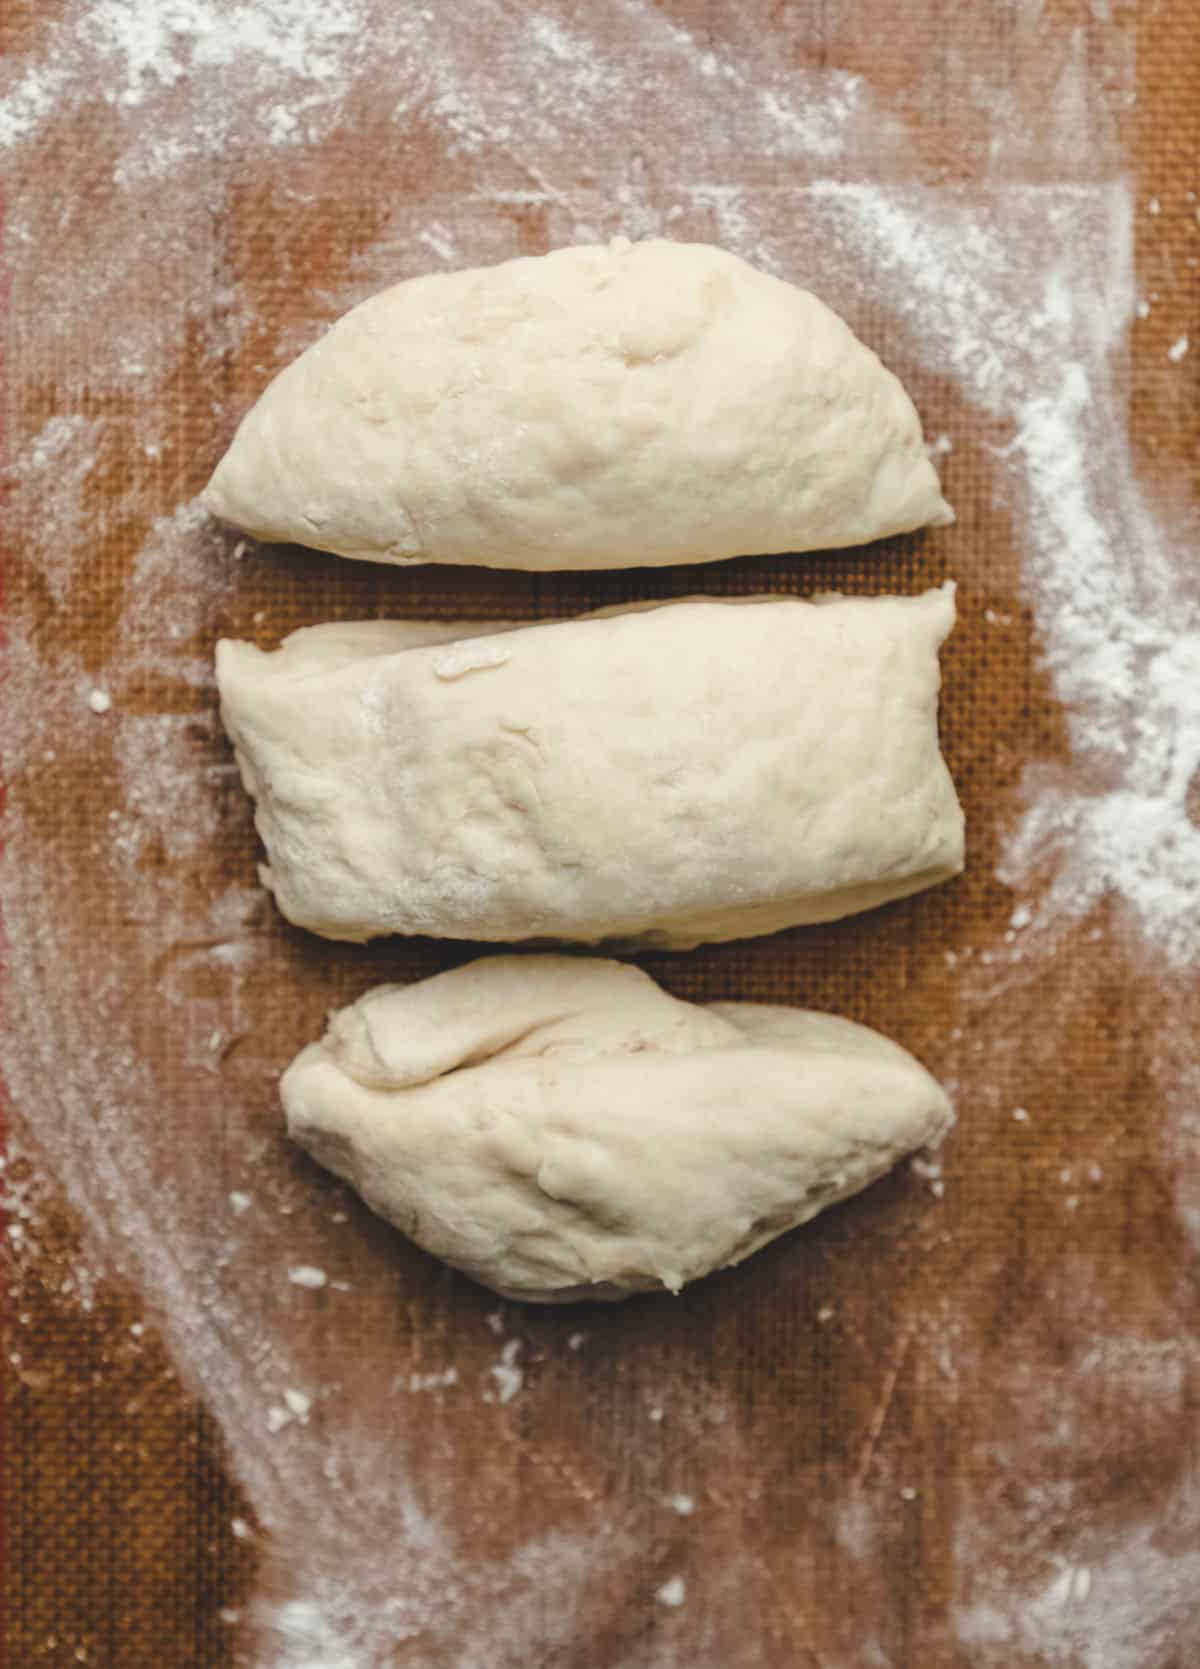 Sopaipilla dough cut into 3 pieces. 